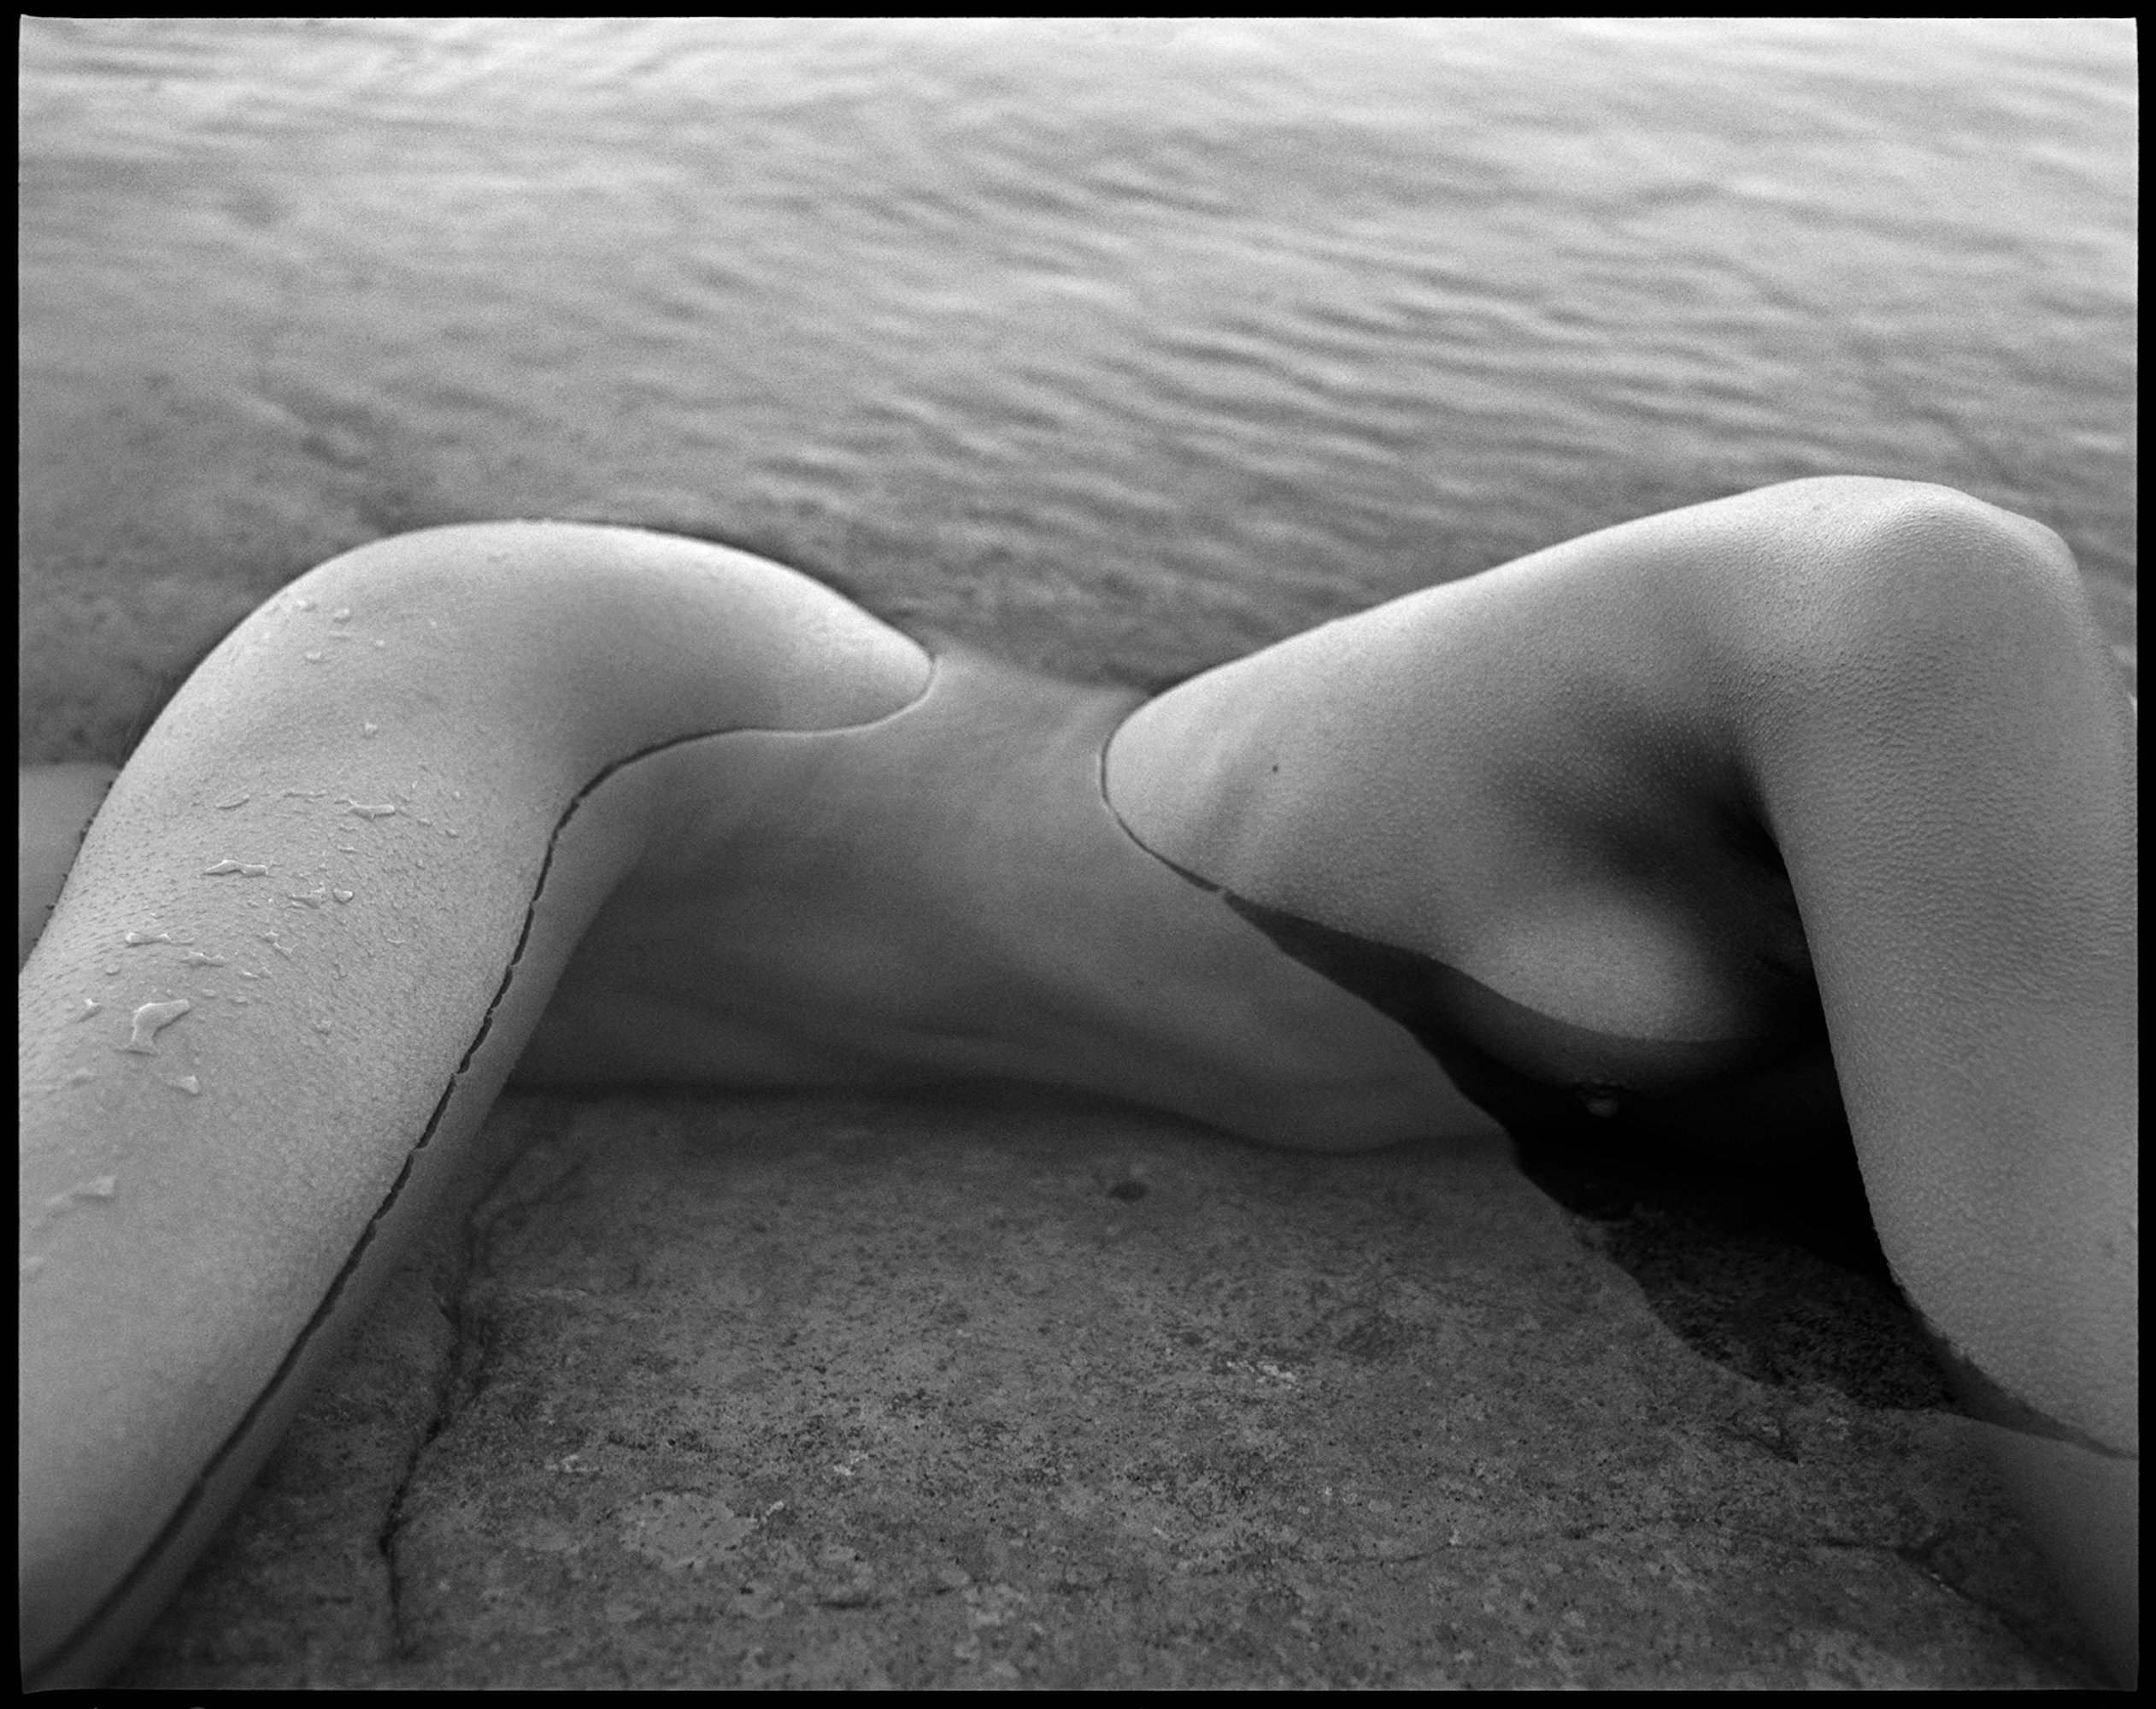 法國時尚攝影師Patrick_Demarchelier首度在美舉辦個人回顧展_看盡A咖明星潛藏真我_nude1.jpg